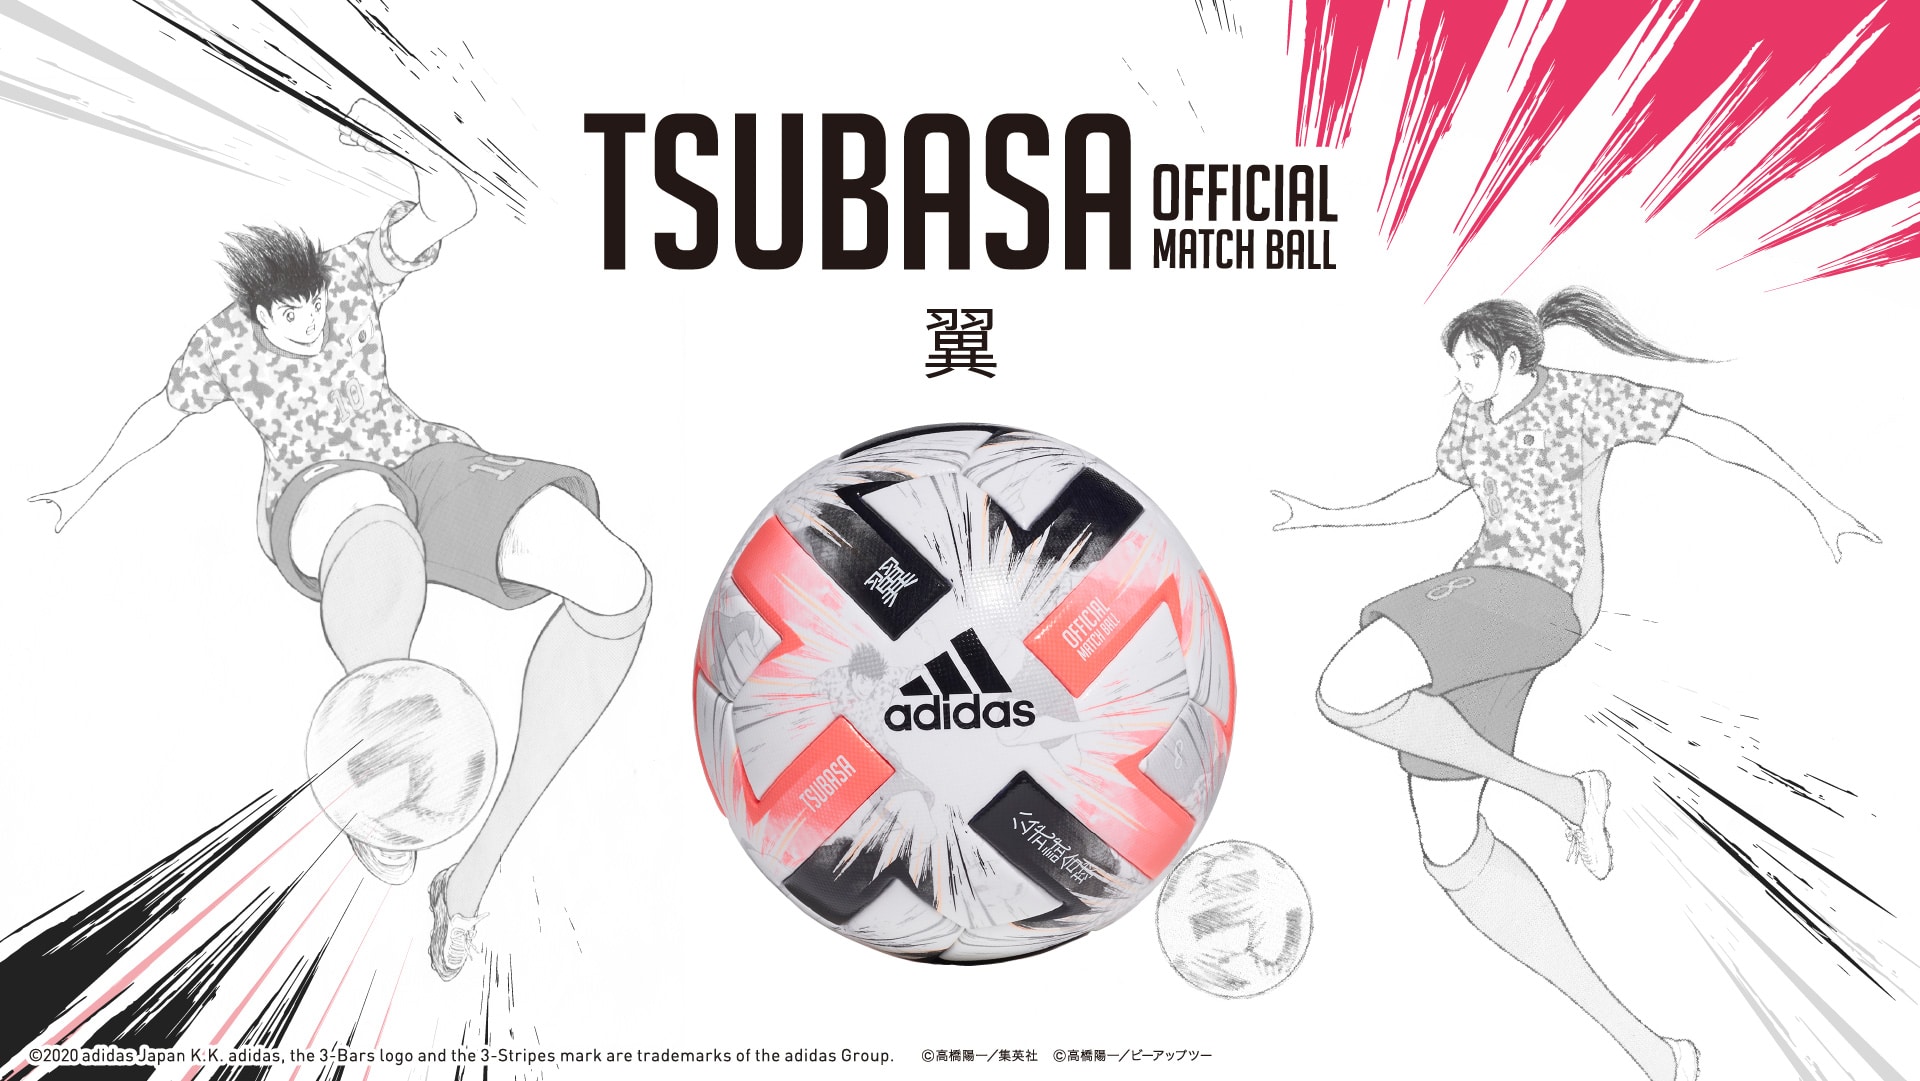 Tsubasa X キャプテン翼 スペシャルエディション Tsubasa Special Editon Adidas アディダス サッカーショップkamo